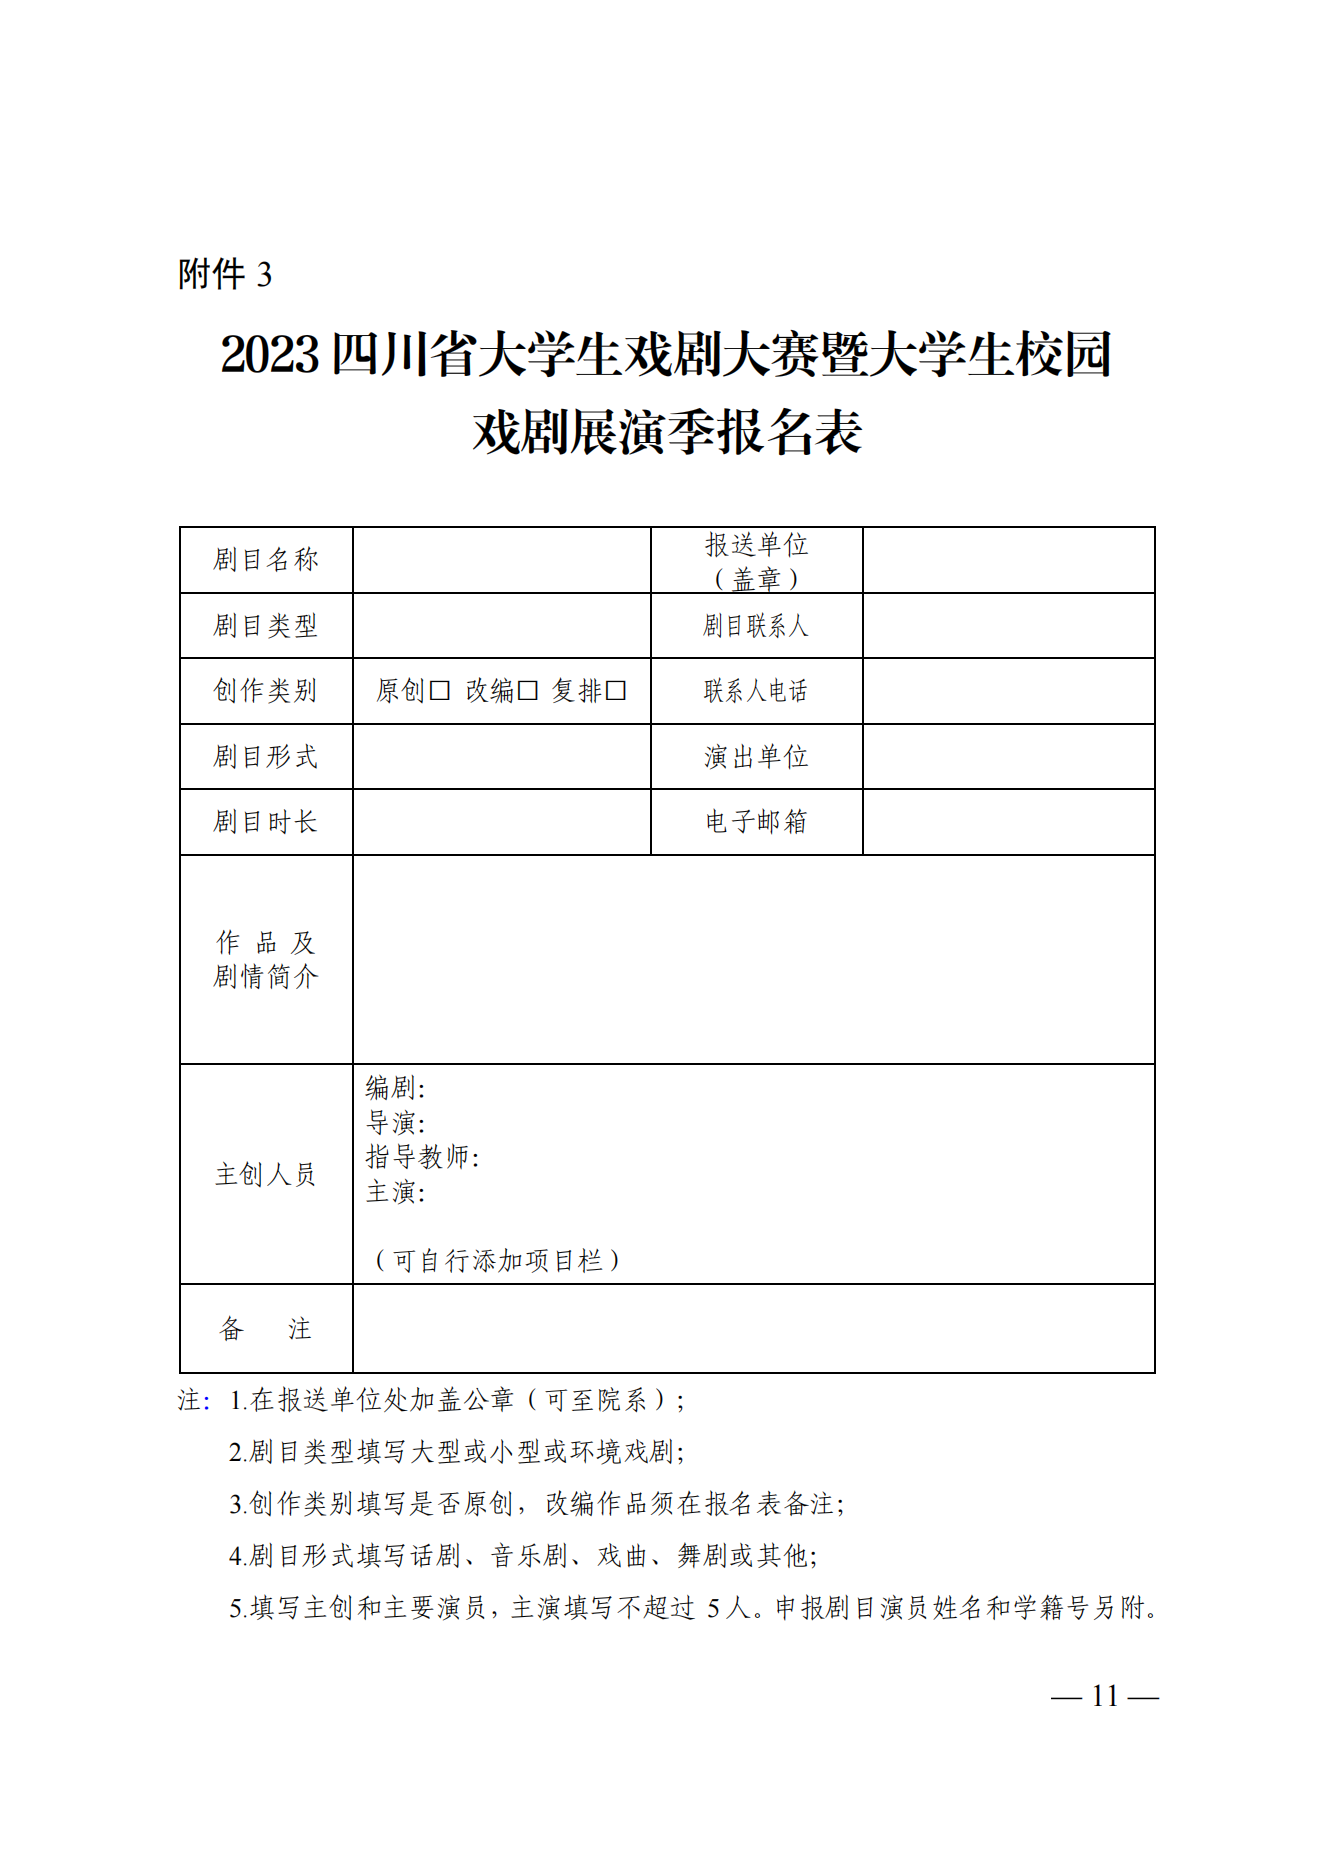 关于举办2023四川省大学生戏剧大赛暨大学生校园戏剧展演季的通知_10.png